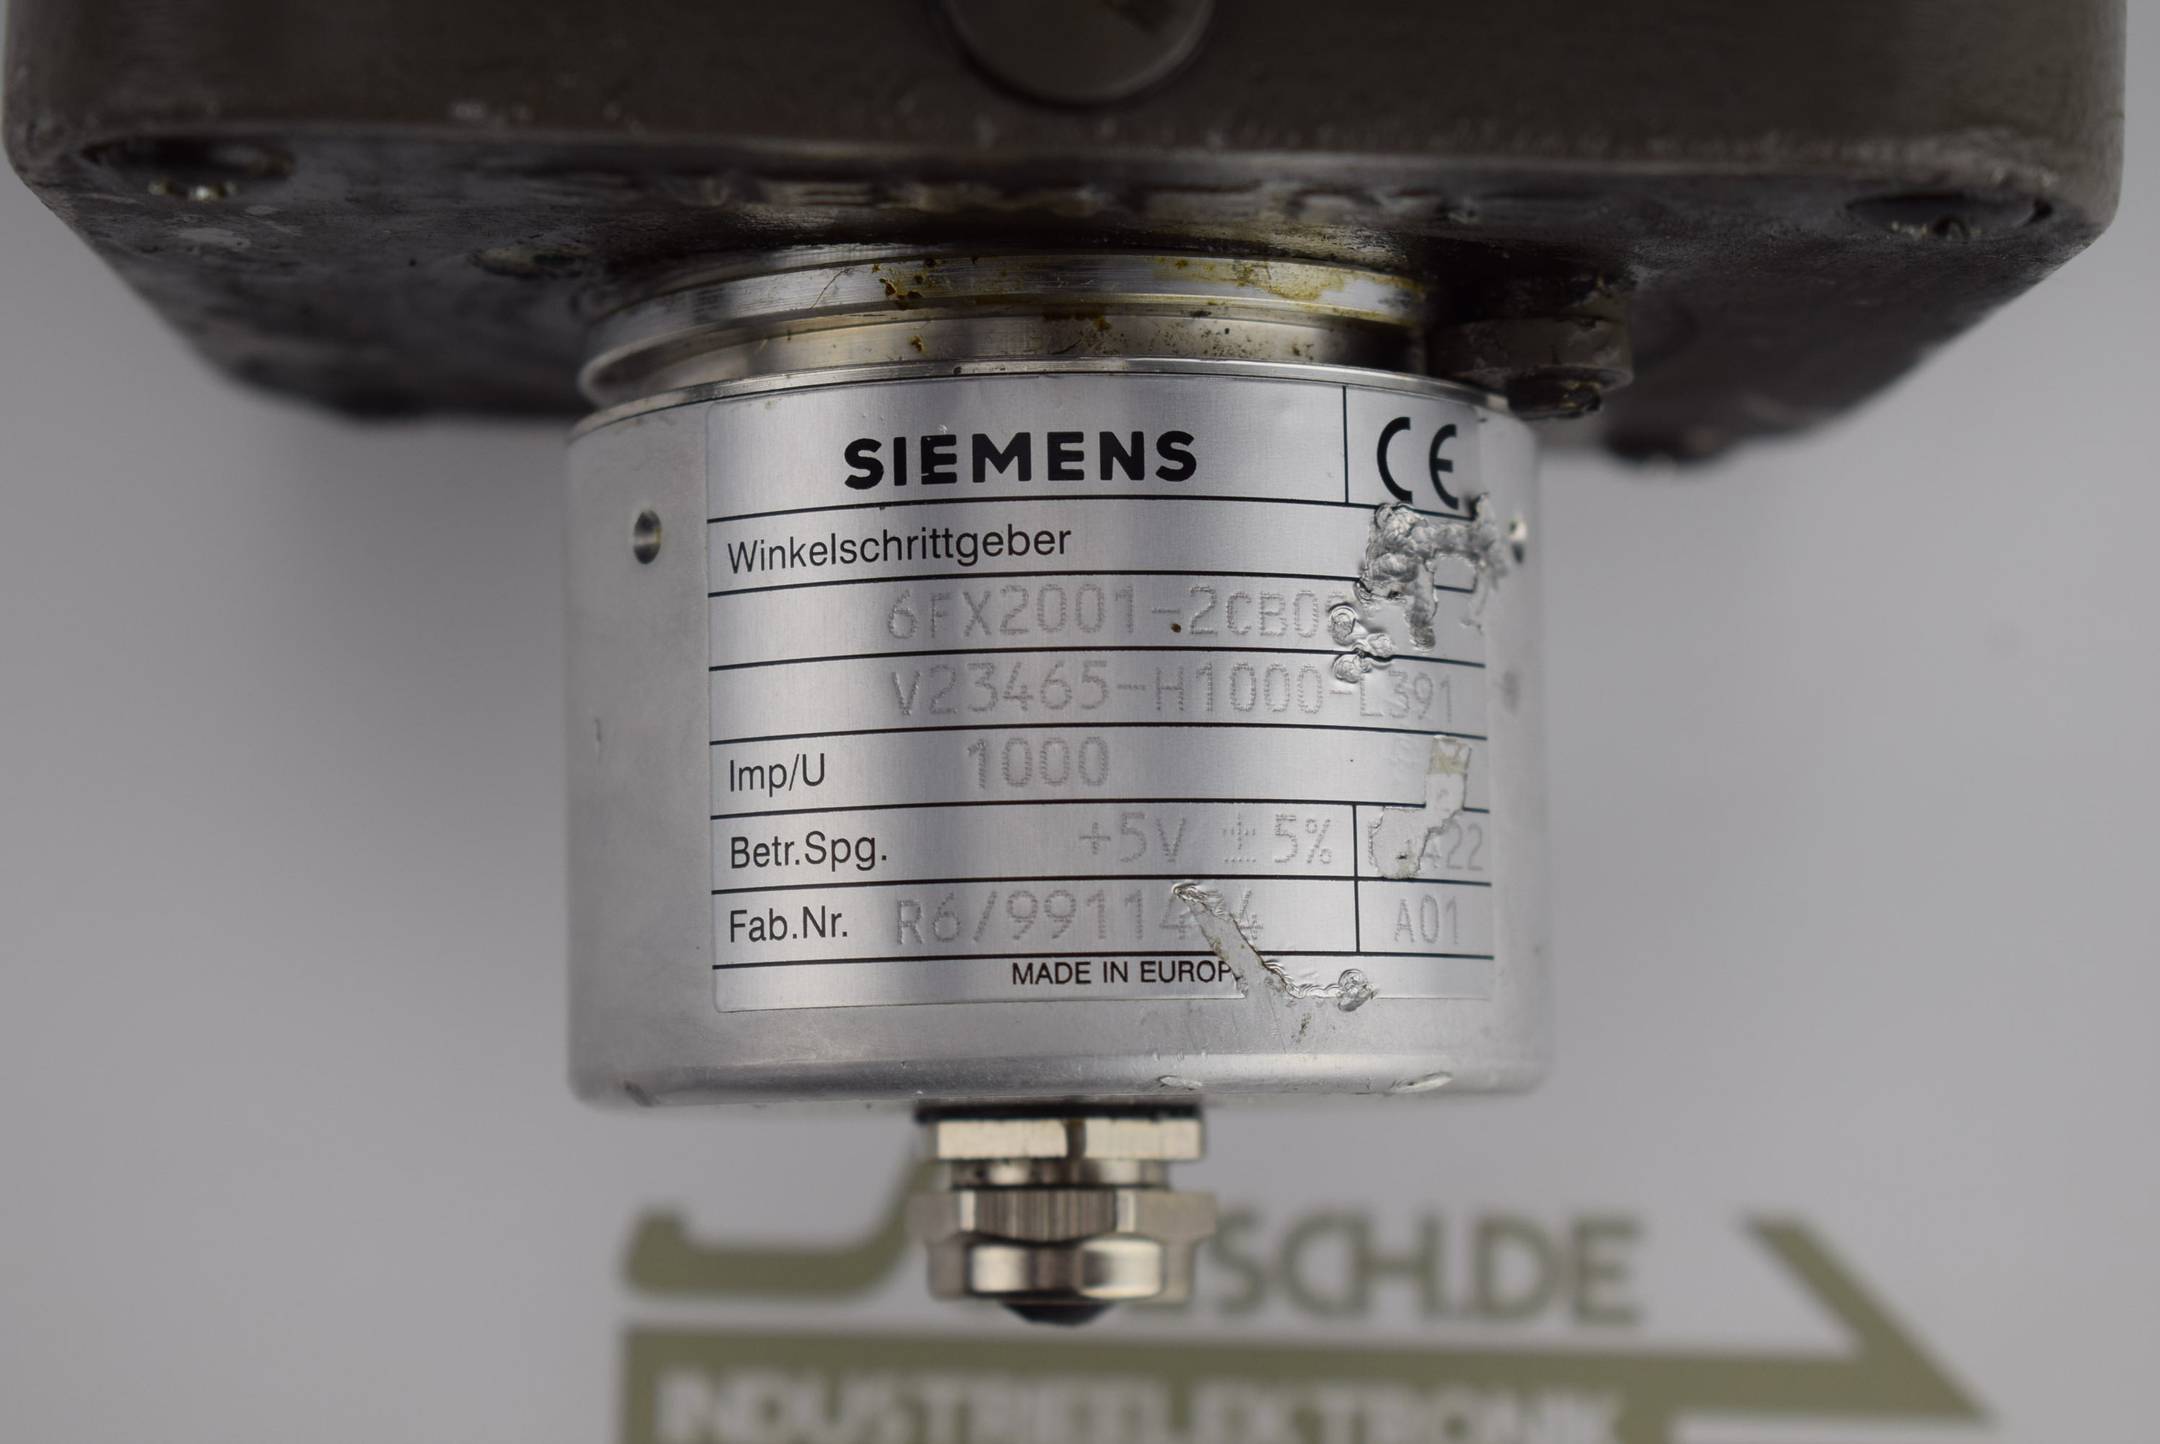 Siemens 3~Permanent-Magnet-Motor 1FT5066-0AF01-2-Z + Siemens Encoder 6FX2001-2CB00